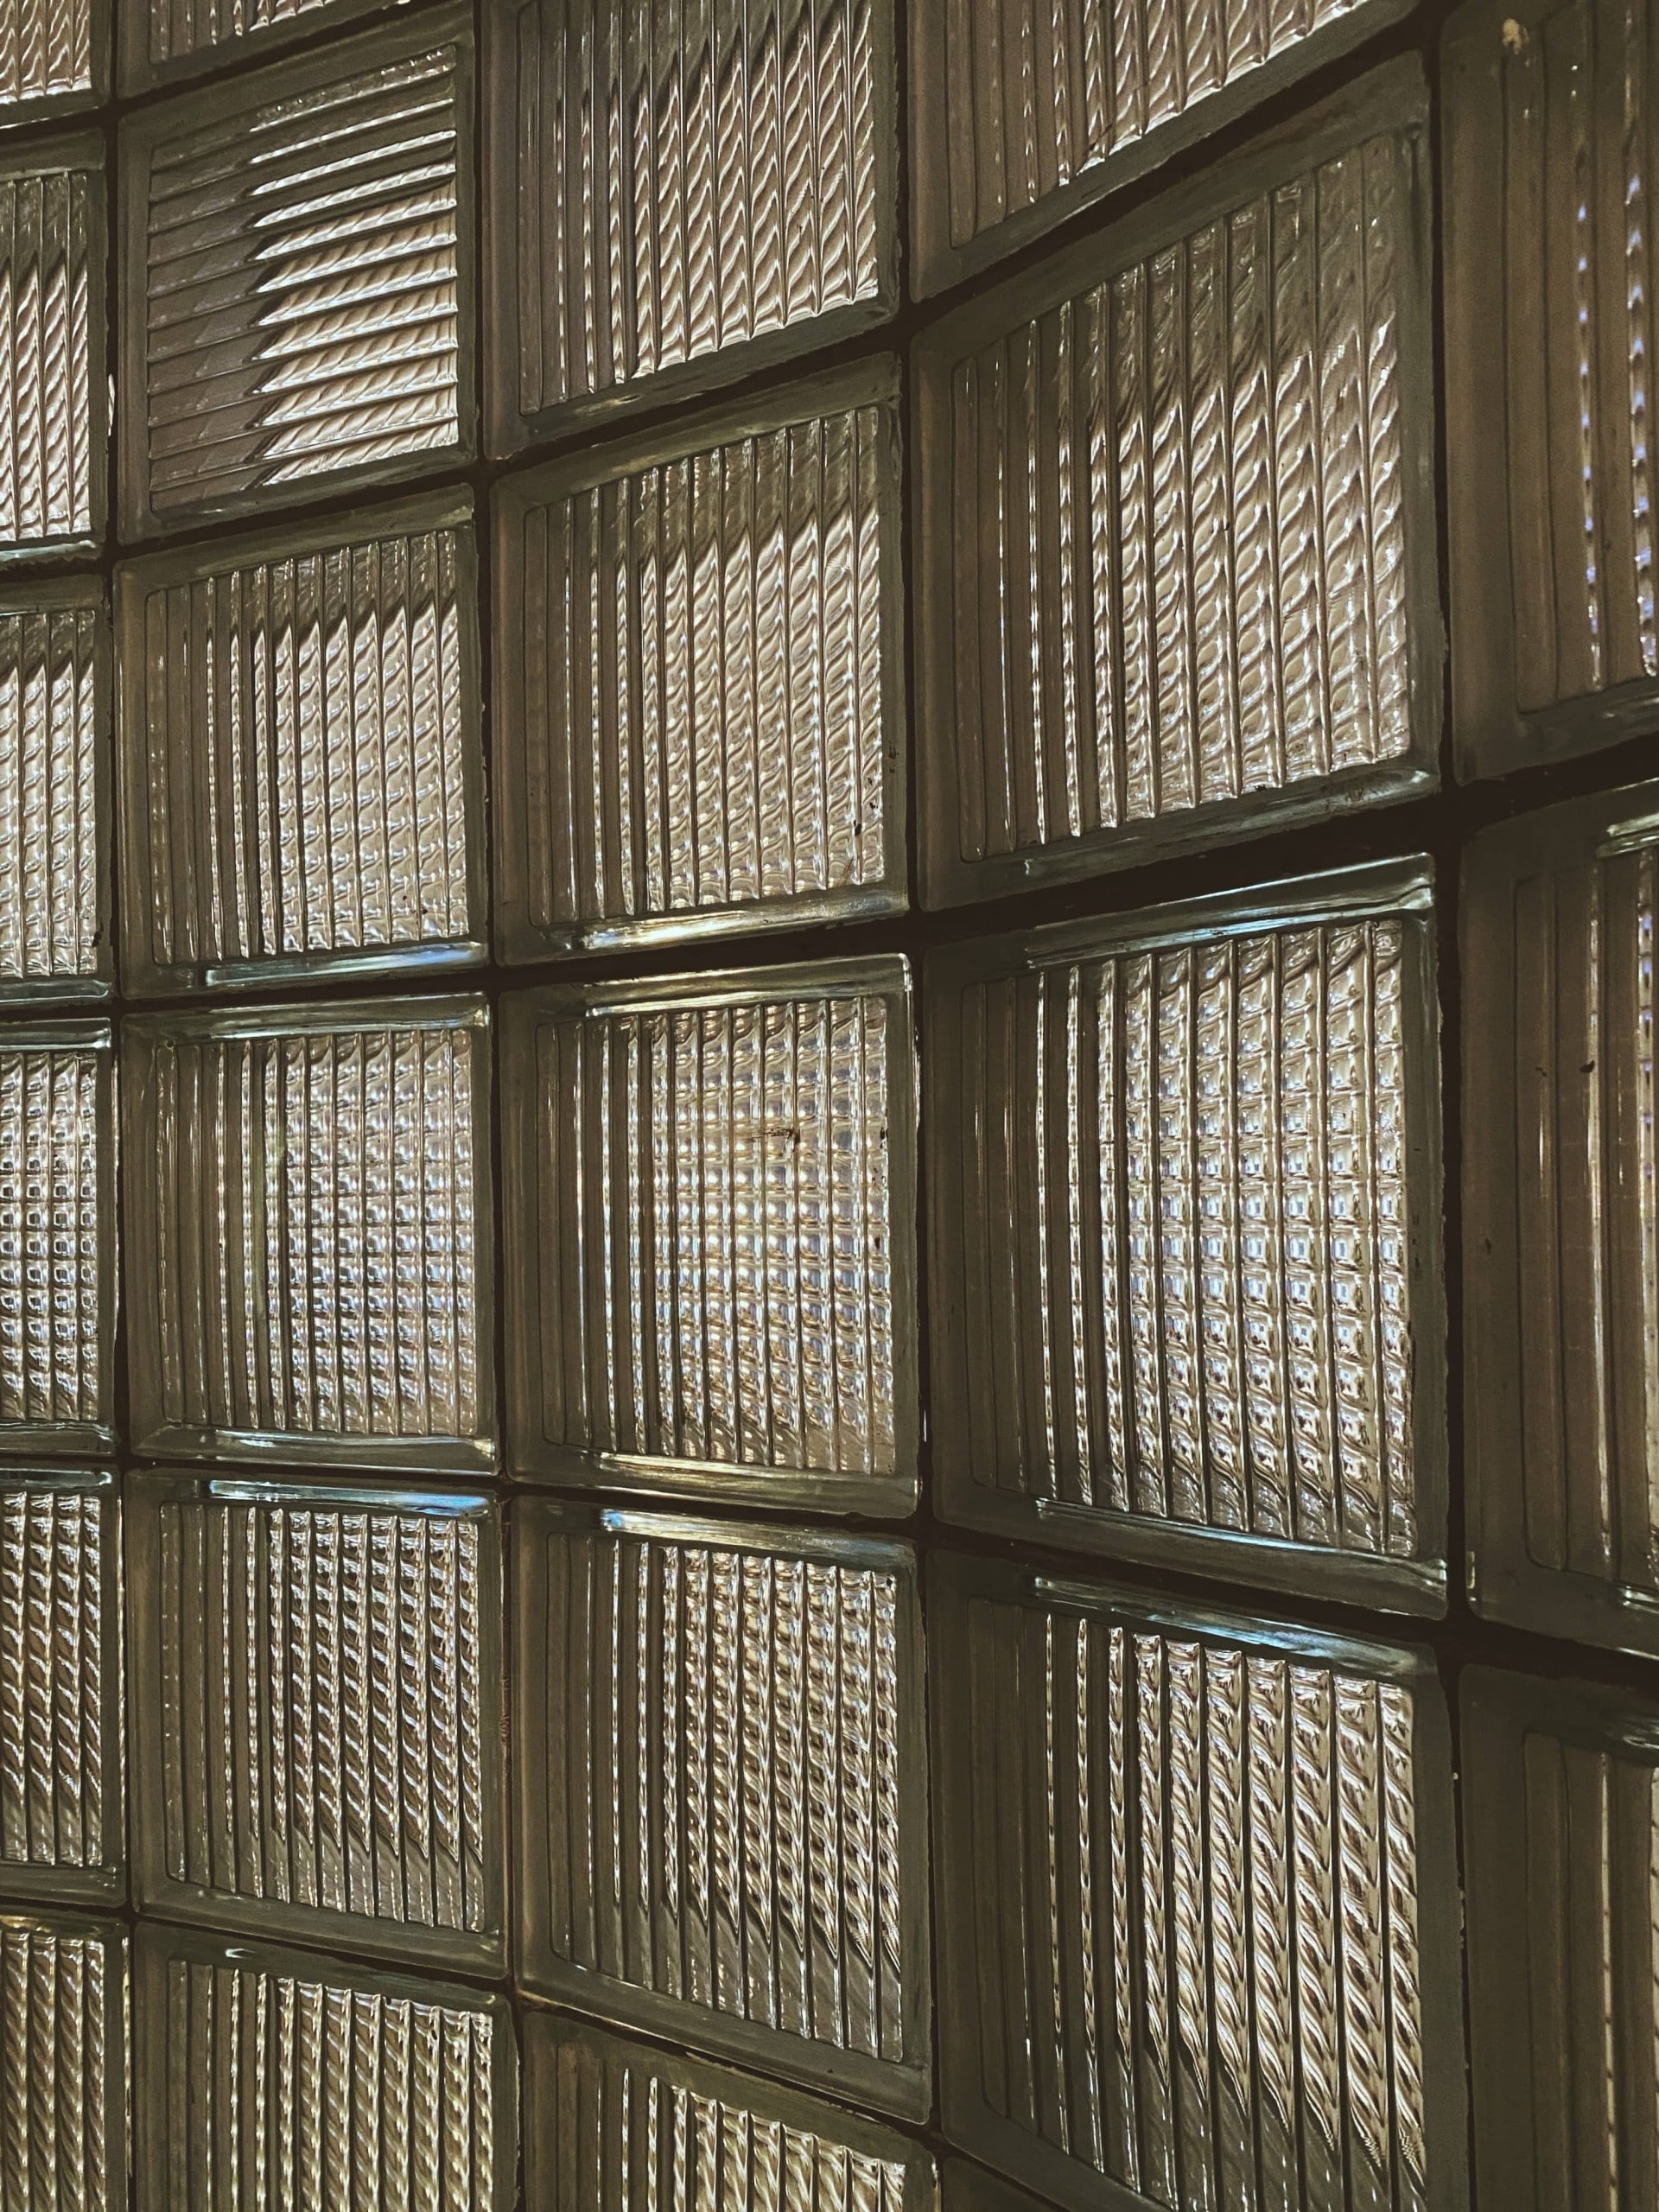 eine leicht gerundete Wand, die vollständig aus quadratsichen Glasbausteinen besteht. Foto: Anh Tuan To via Unsplash